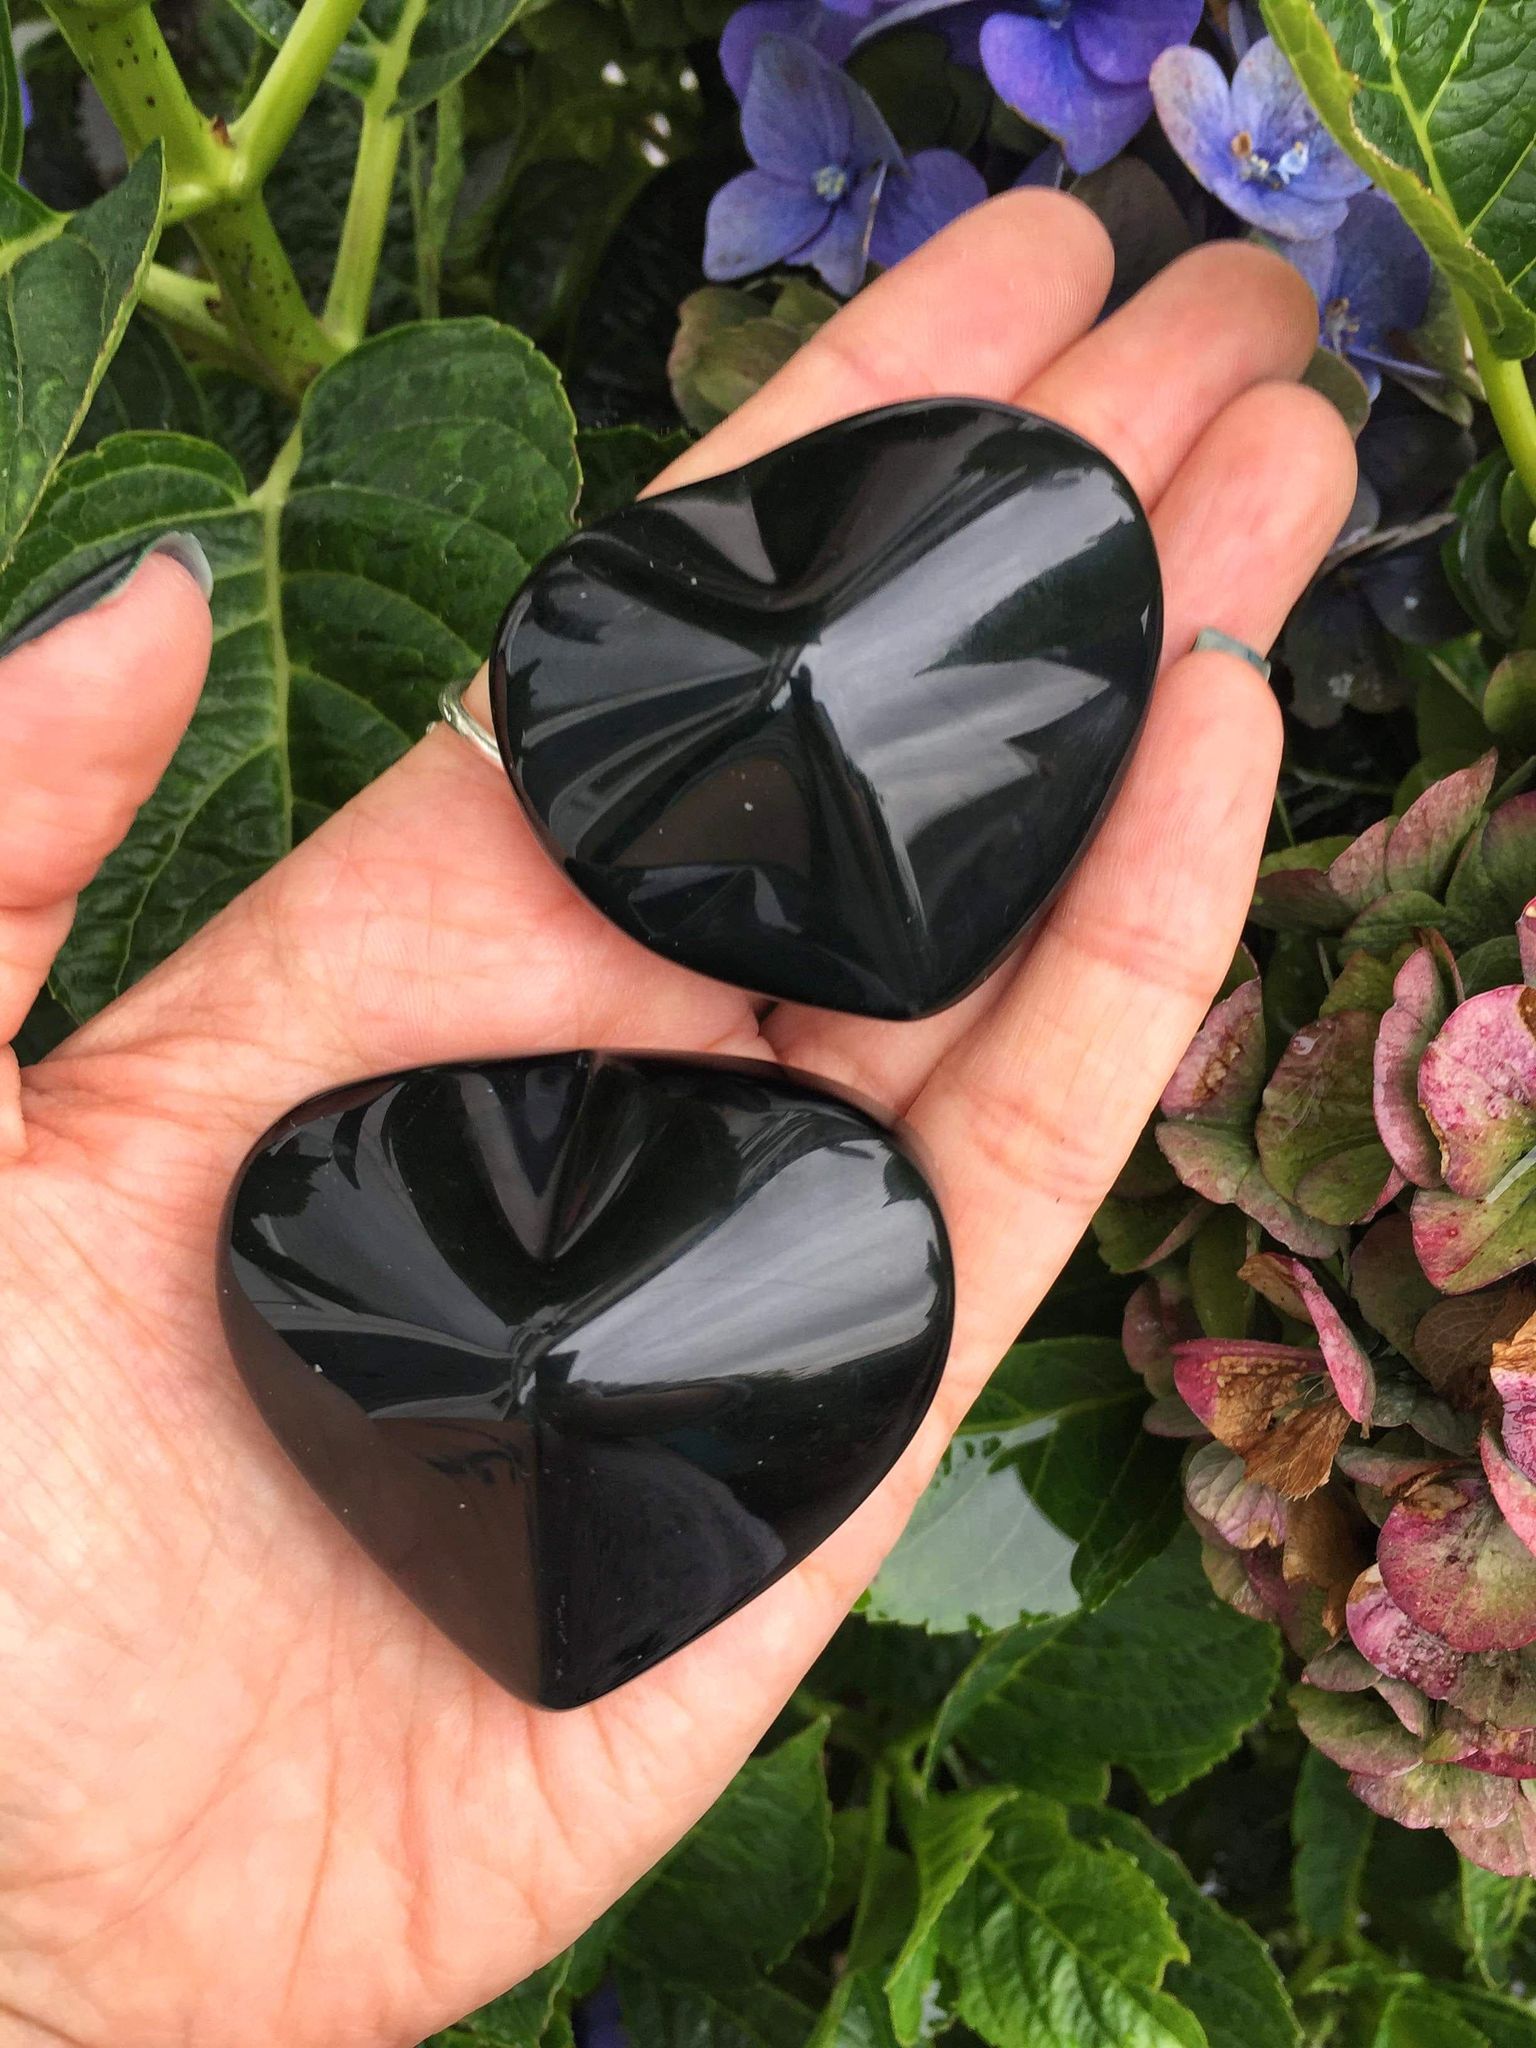 Obsidian hearts